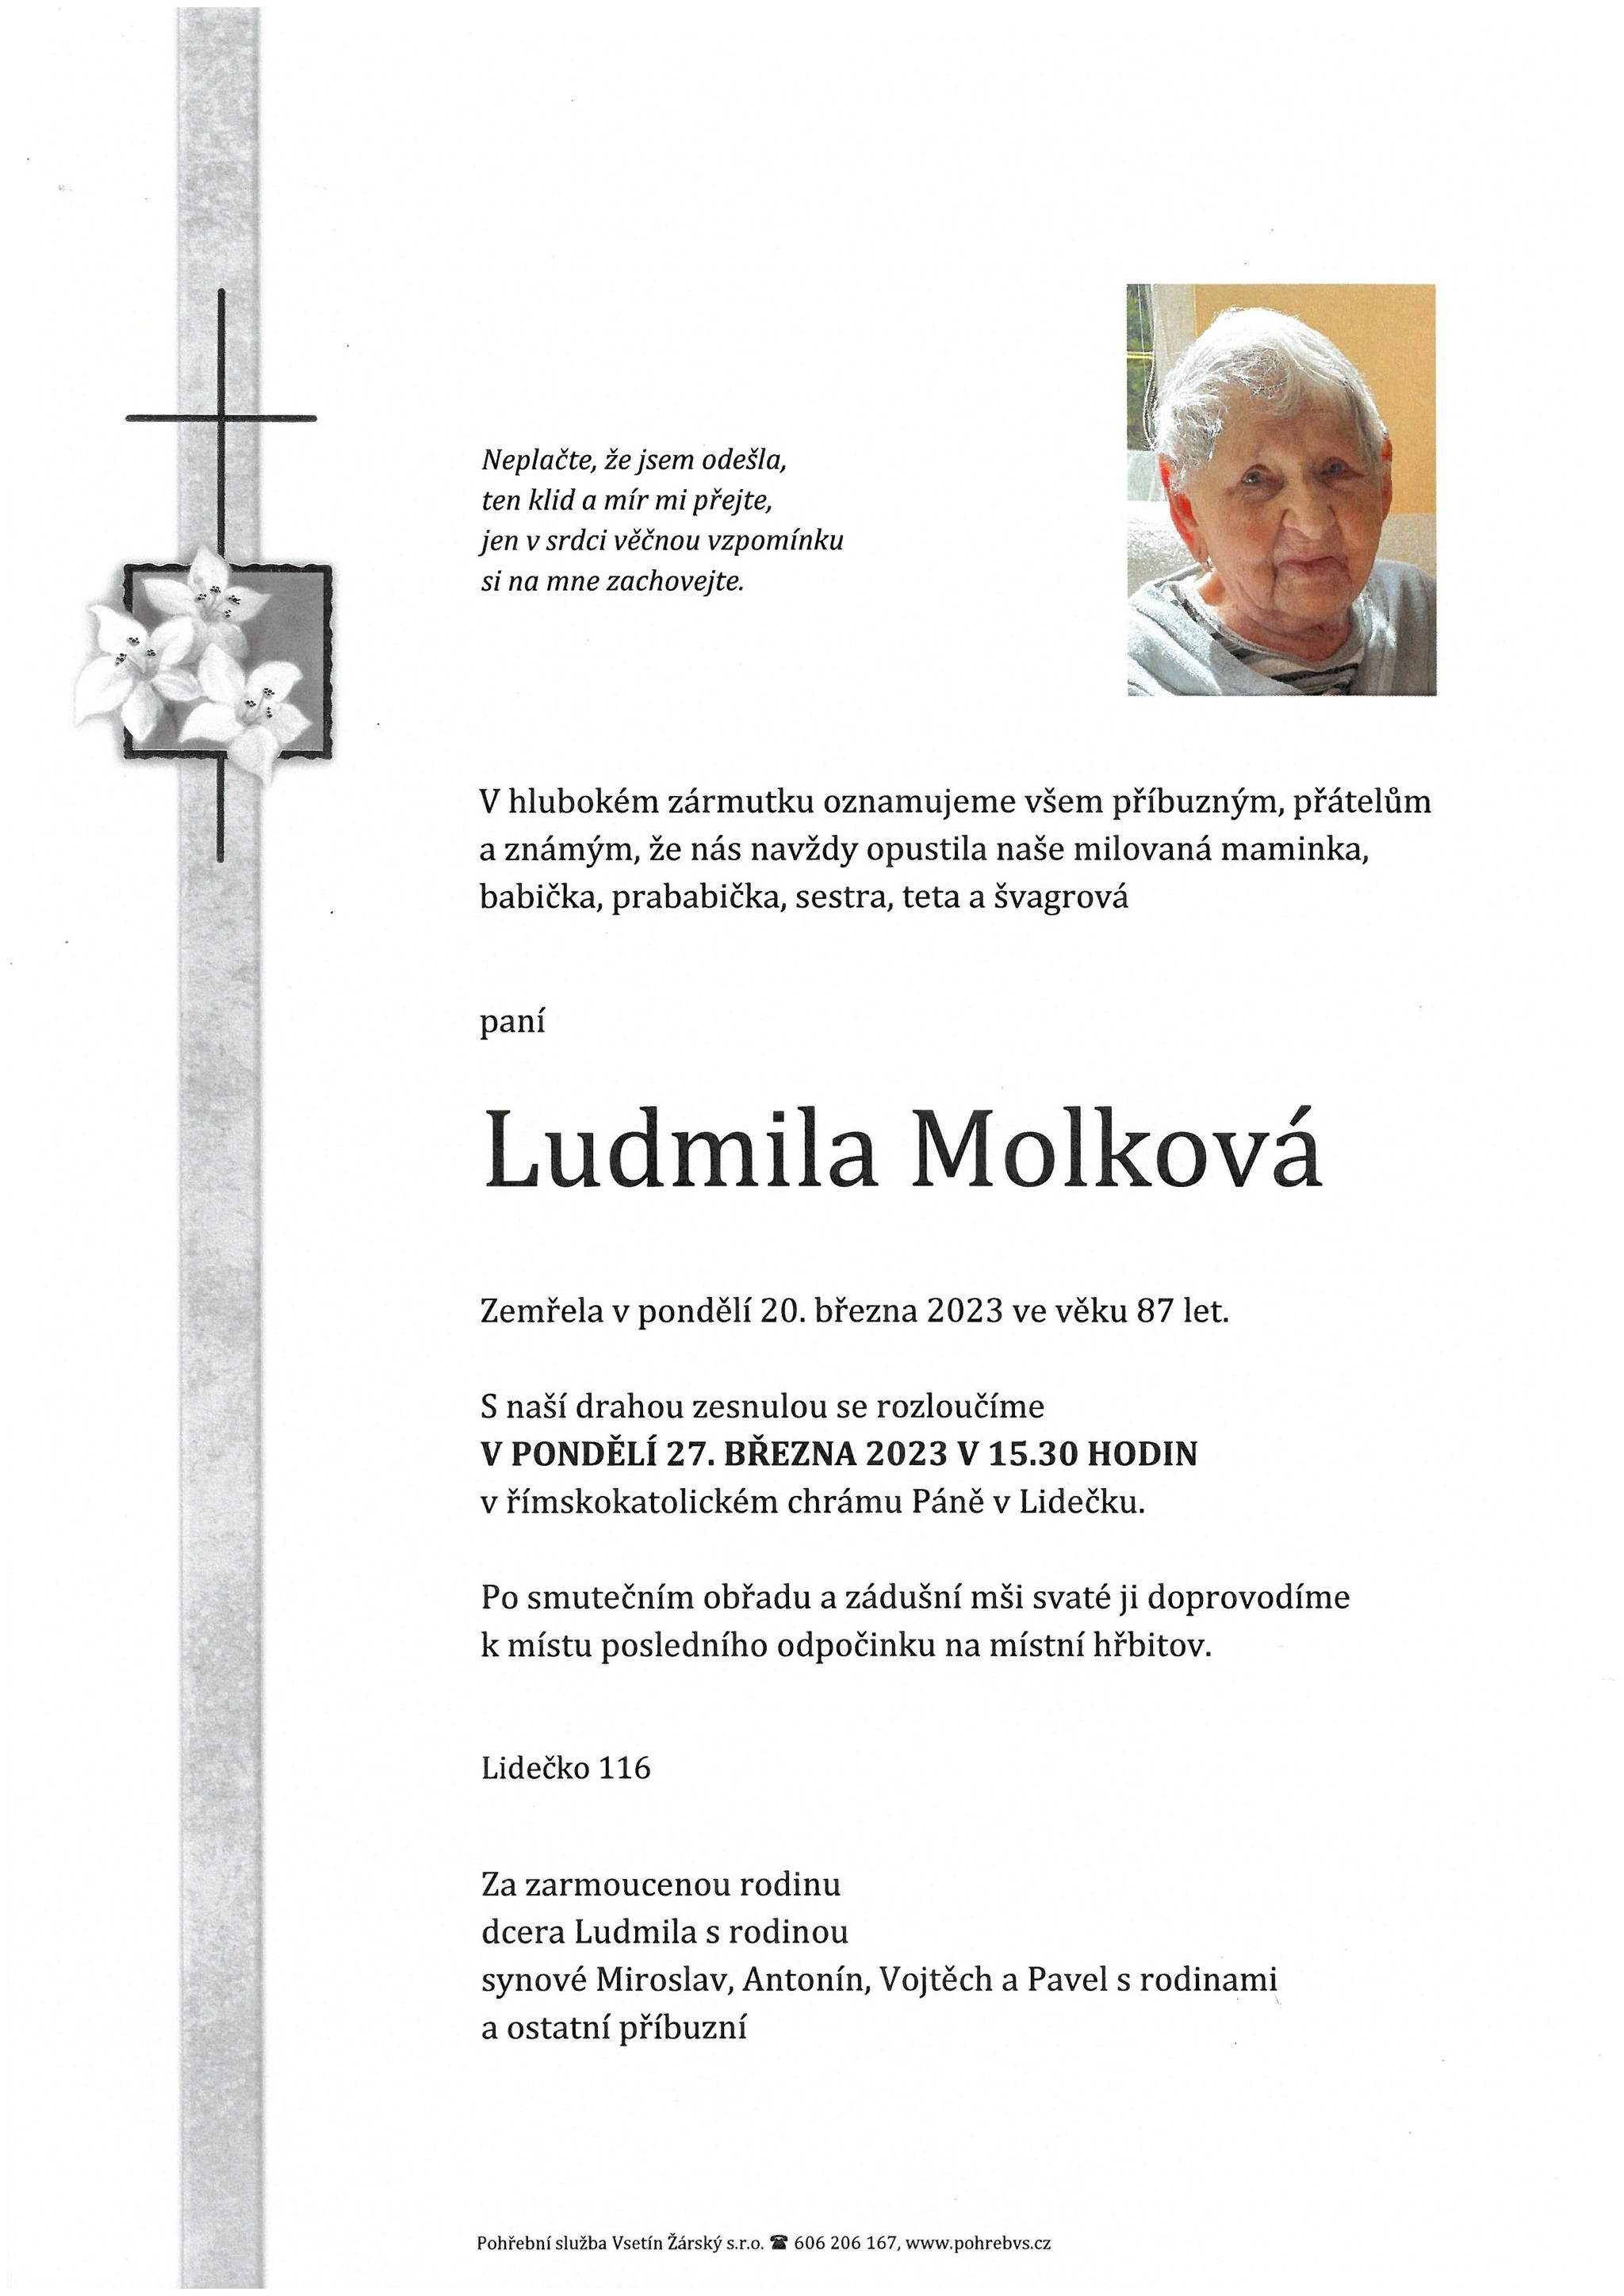 Ludmila Molková